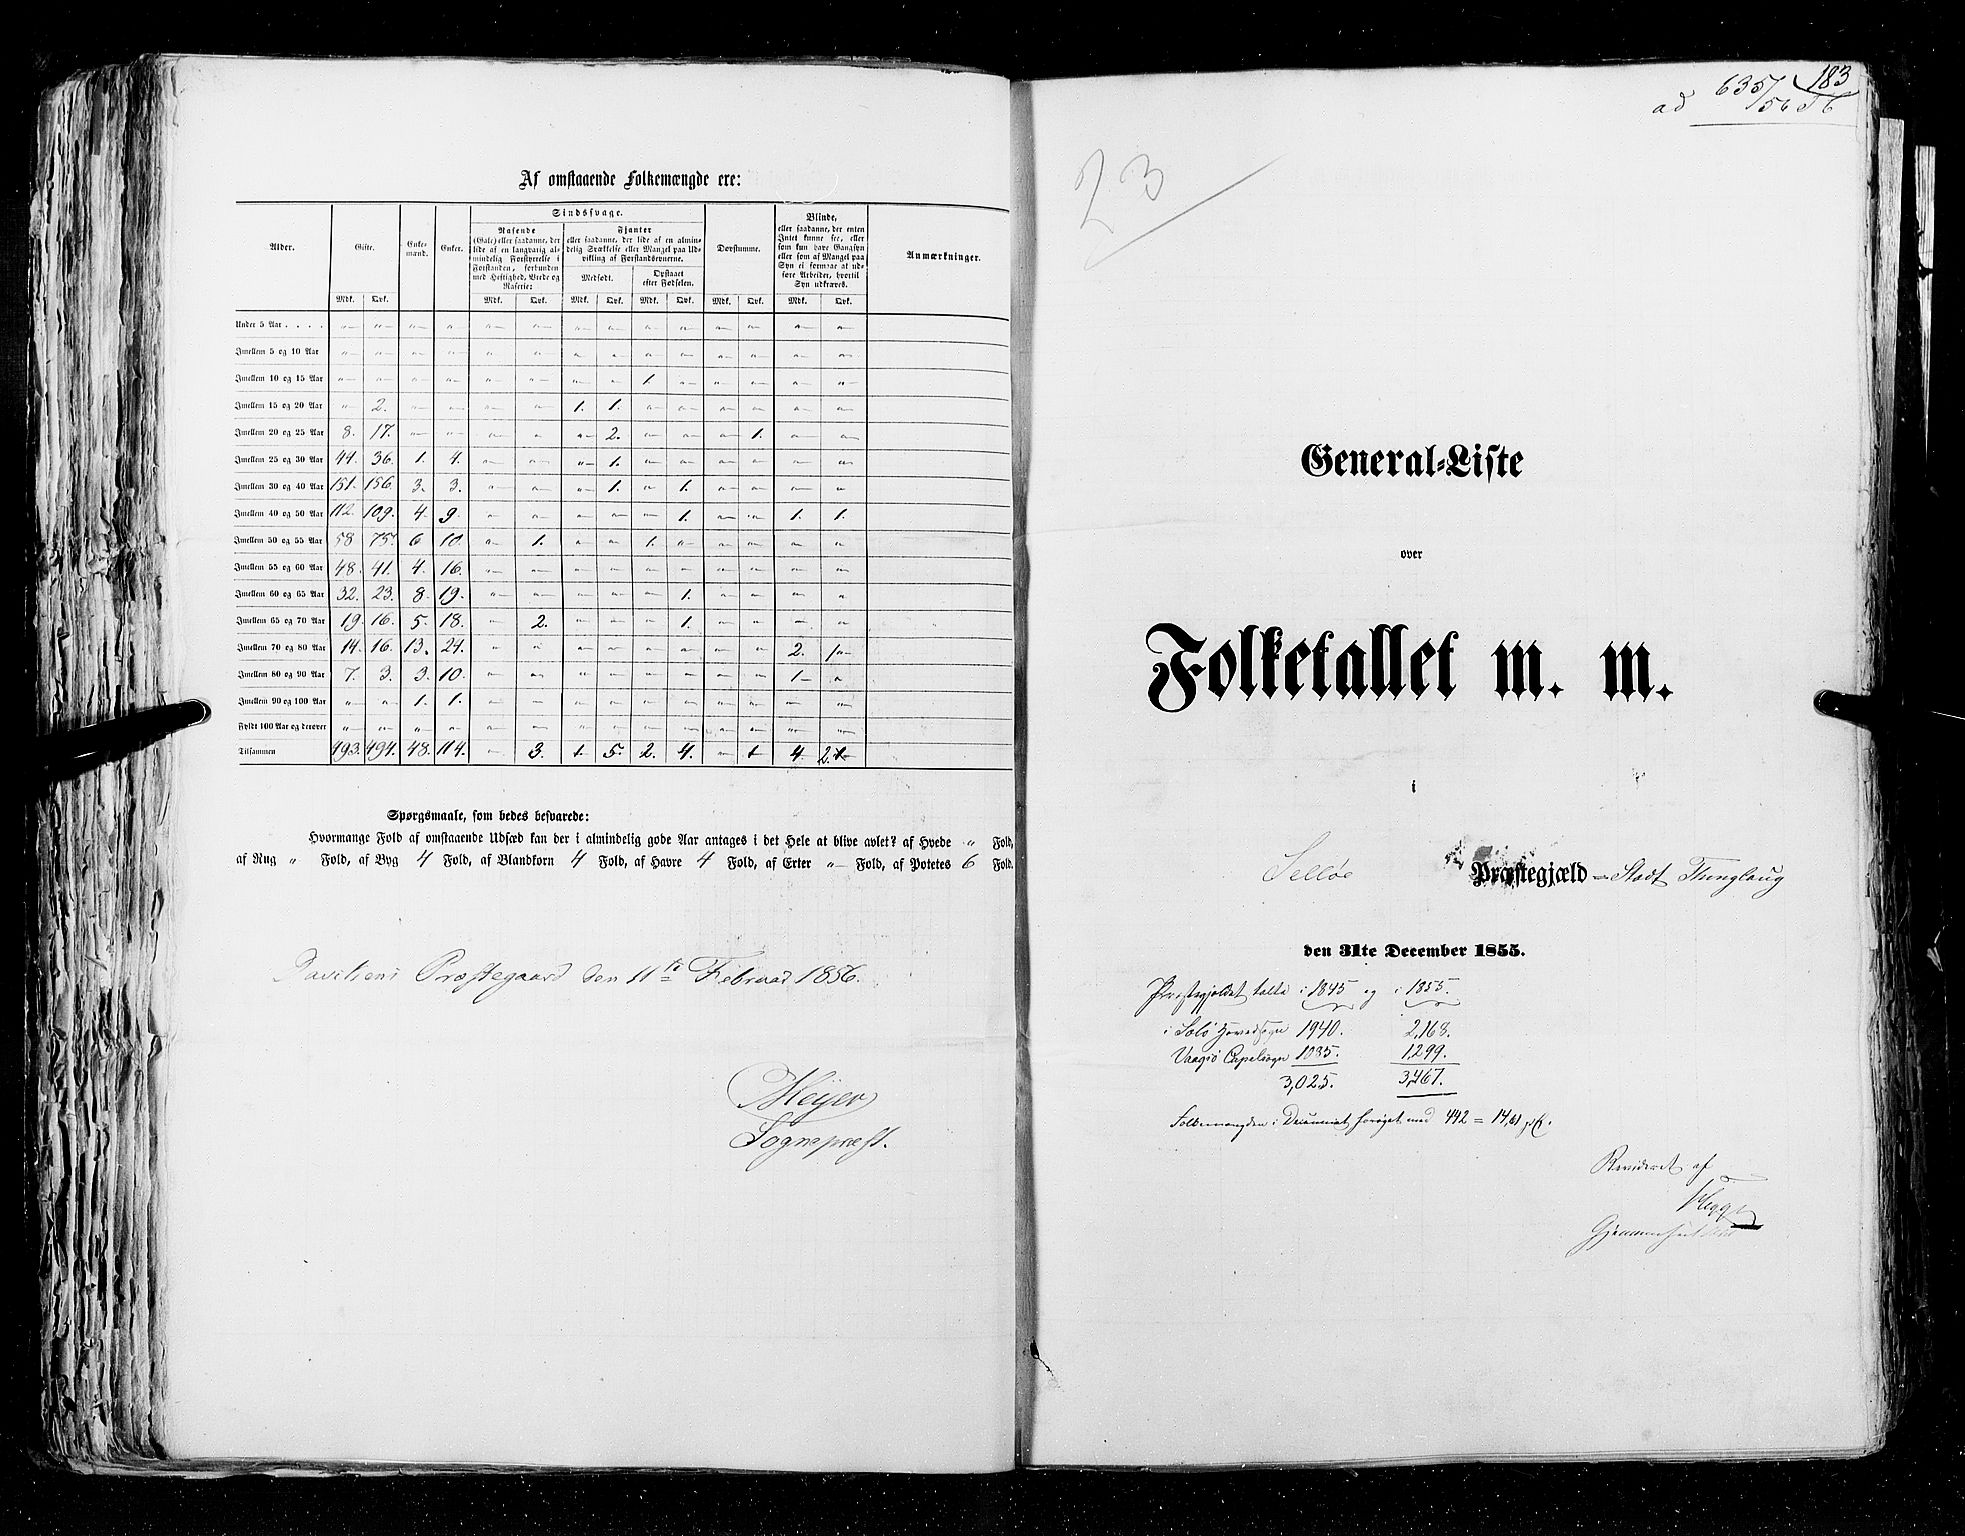 RA, Census 1855, vol. 5: Nordre Bergenhus amt, Romsdal amt og Søndre Trondhjem amt, 1855, p. 183